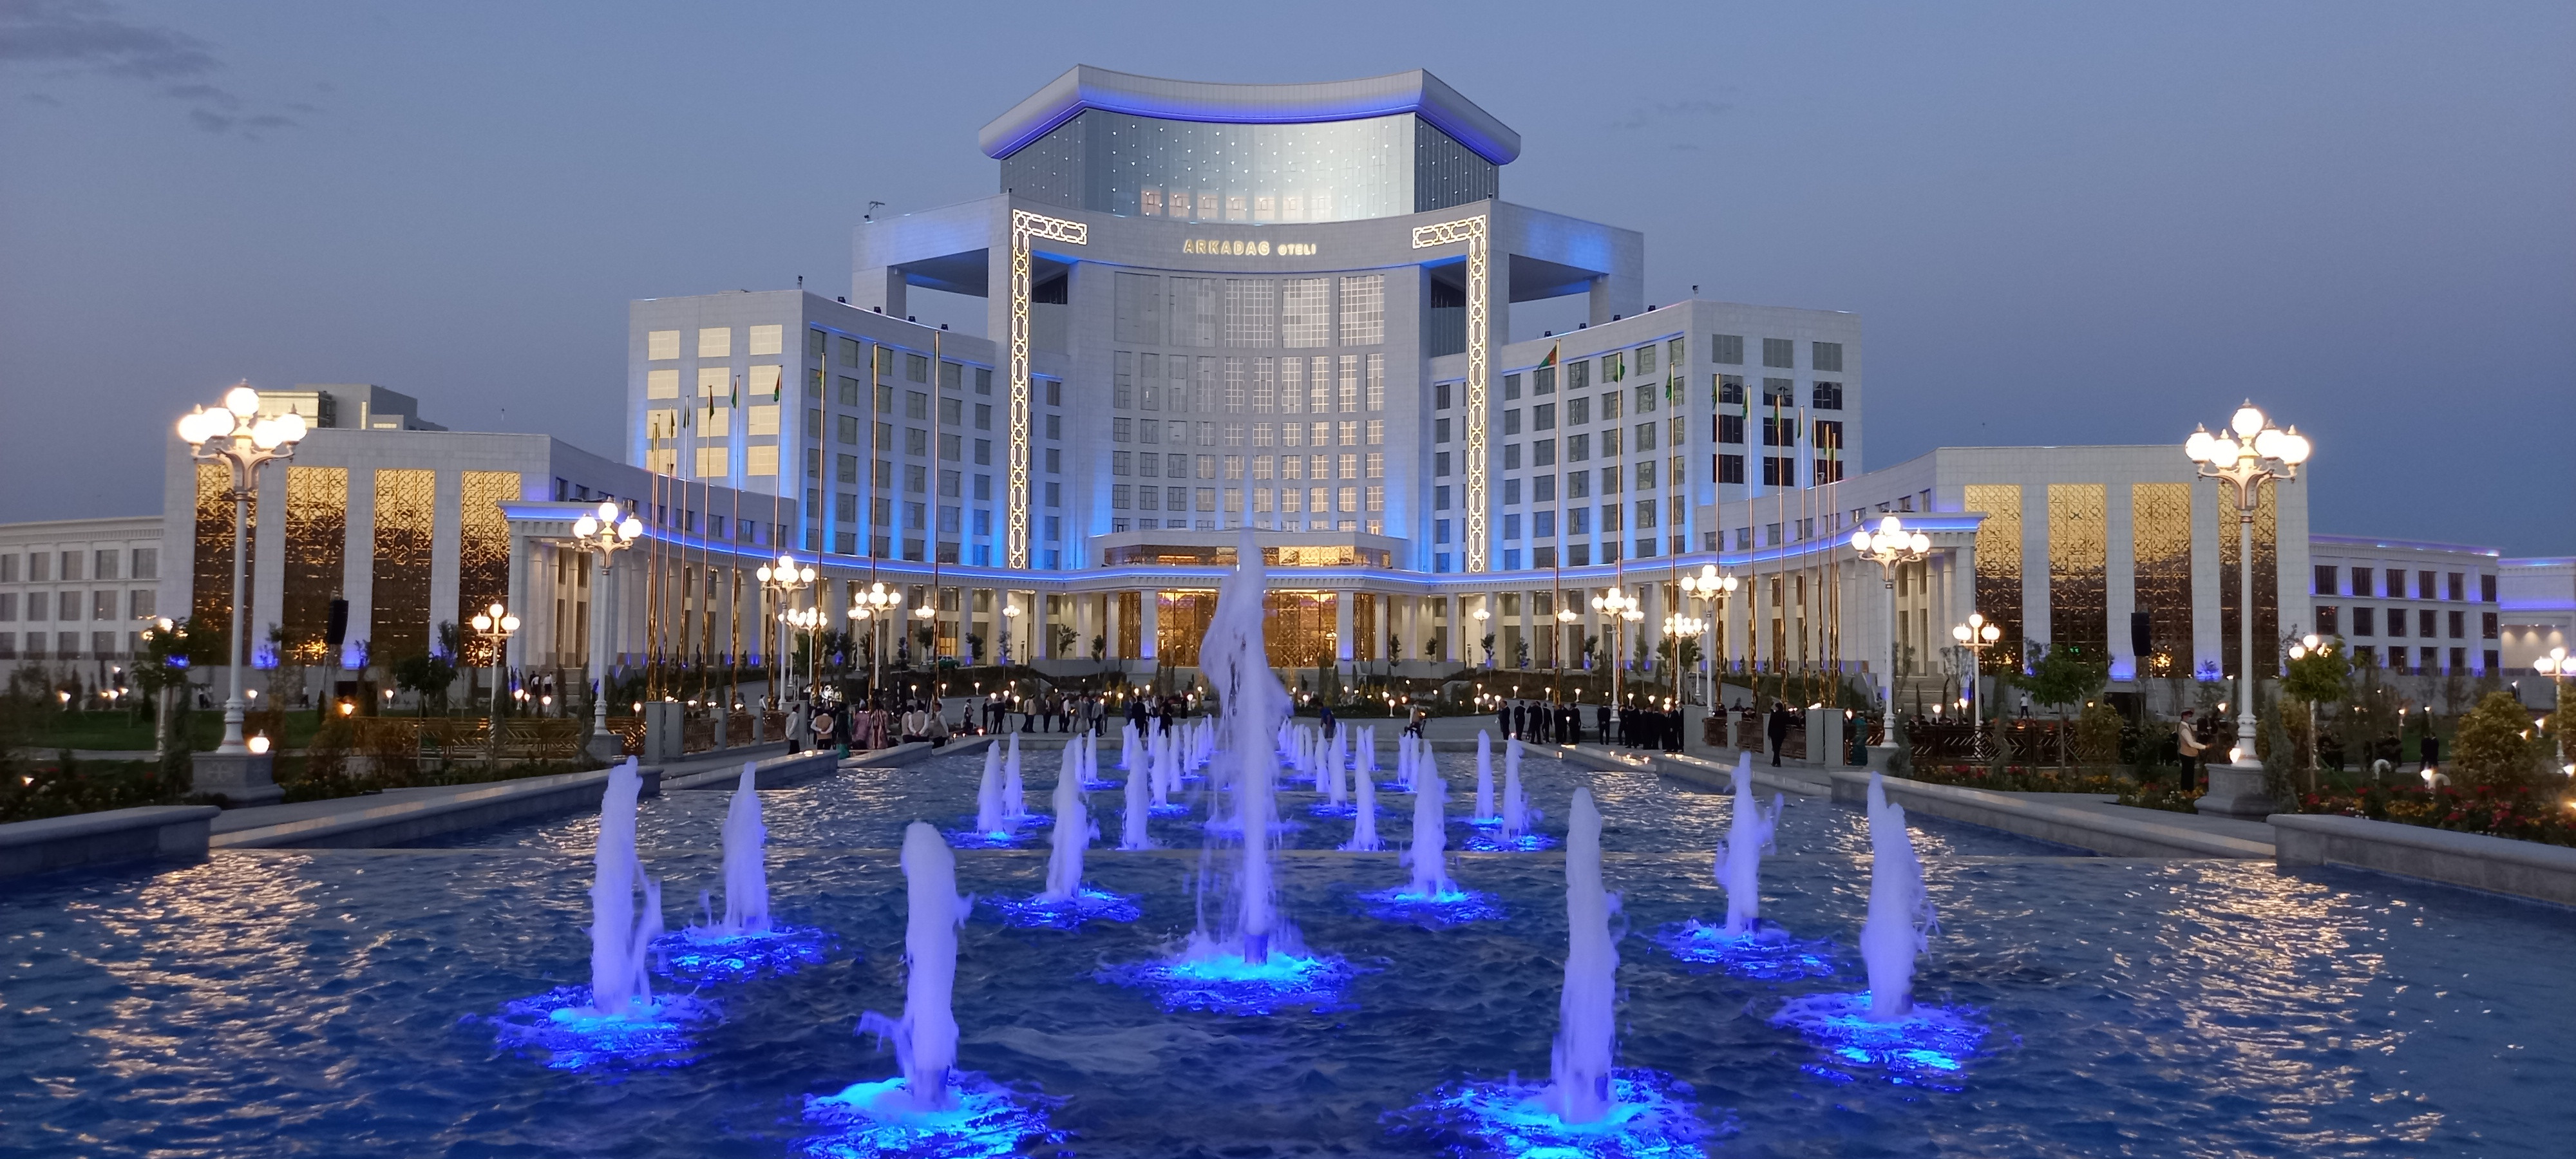 Туркменистан 2017 год. Аркадаг город в Туркменистане. Аркадаг отель Туркменистан. Аркадаг отель в Ашхабаде.